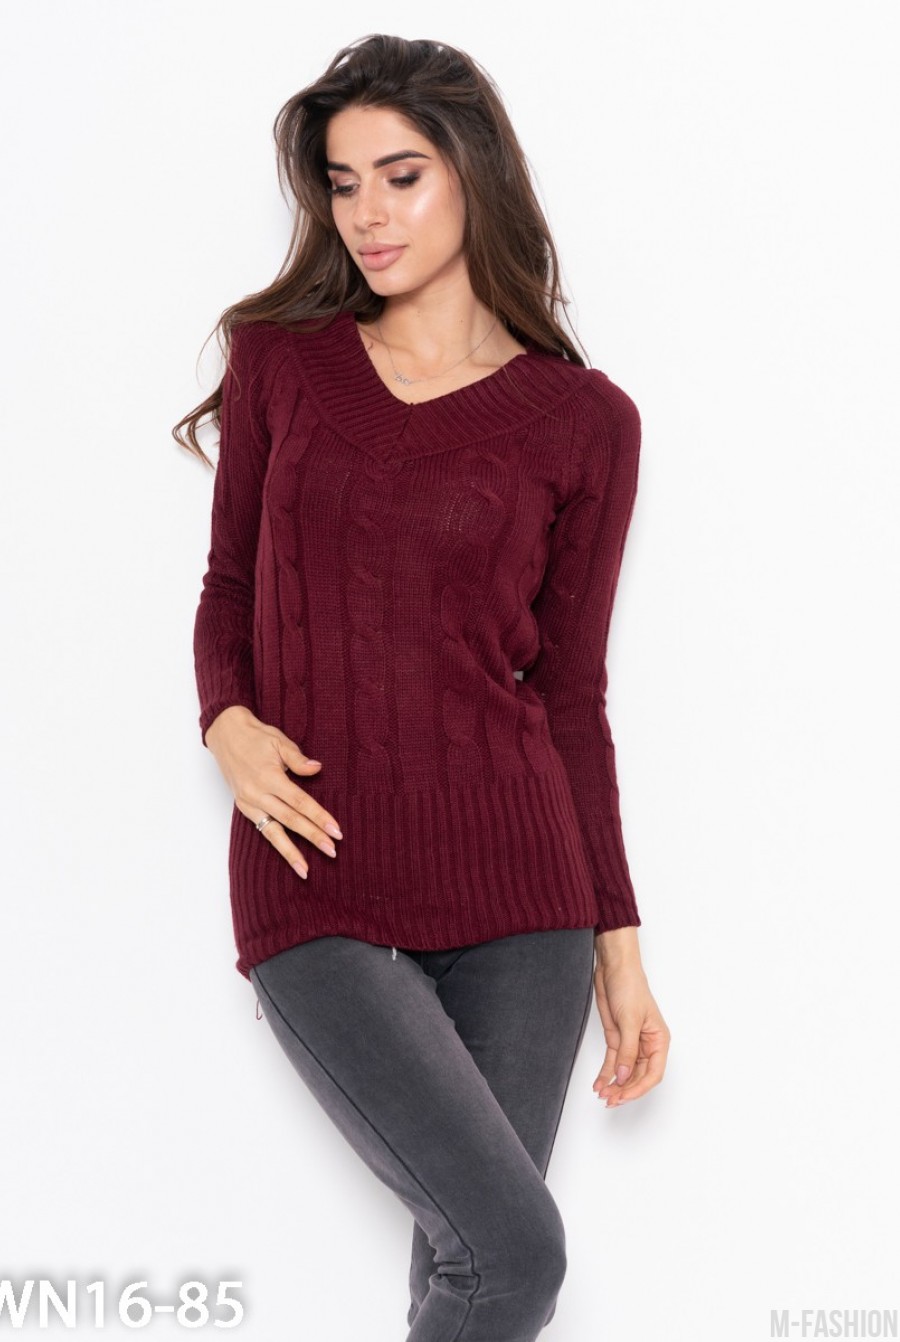 Бордовый тонкий свитер ажурной вязки - Фото 1